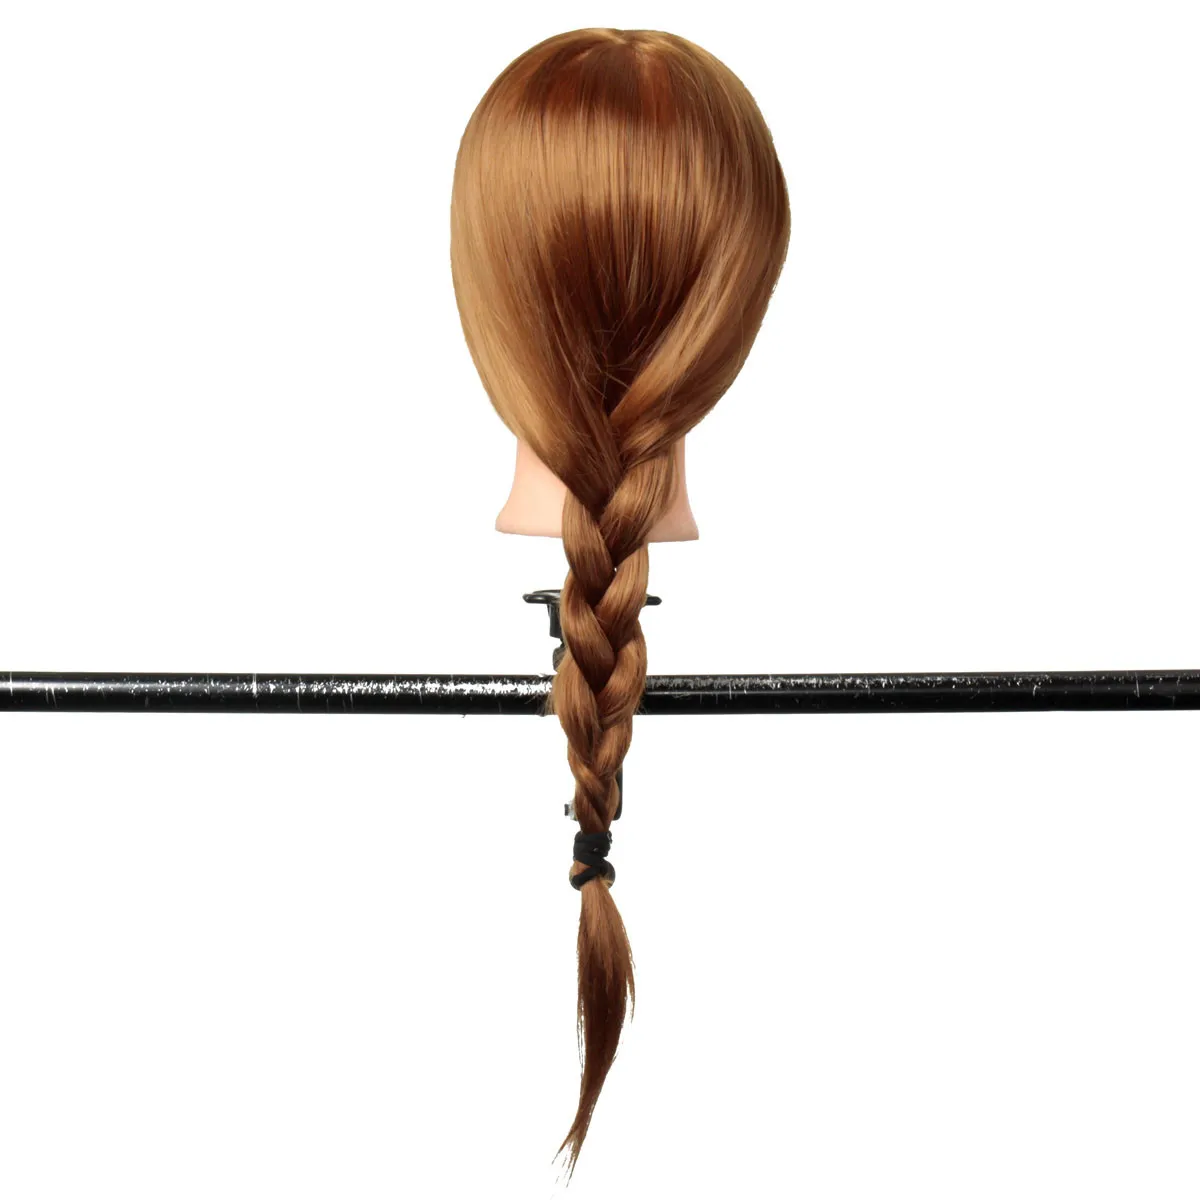 24 дюйма 30% настоящие натуральные волосы манекен голова с подставкой Держатель для причесок профессиональная тренировка Болванка под парик Женщины